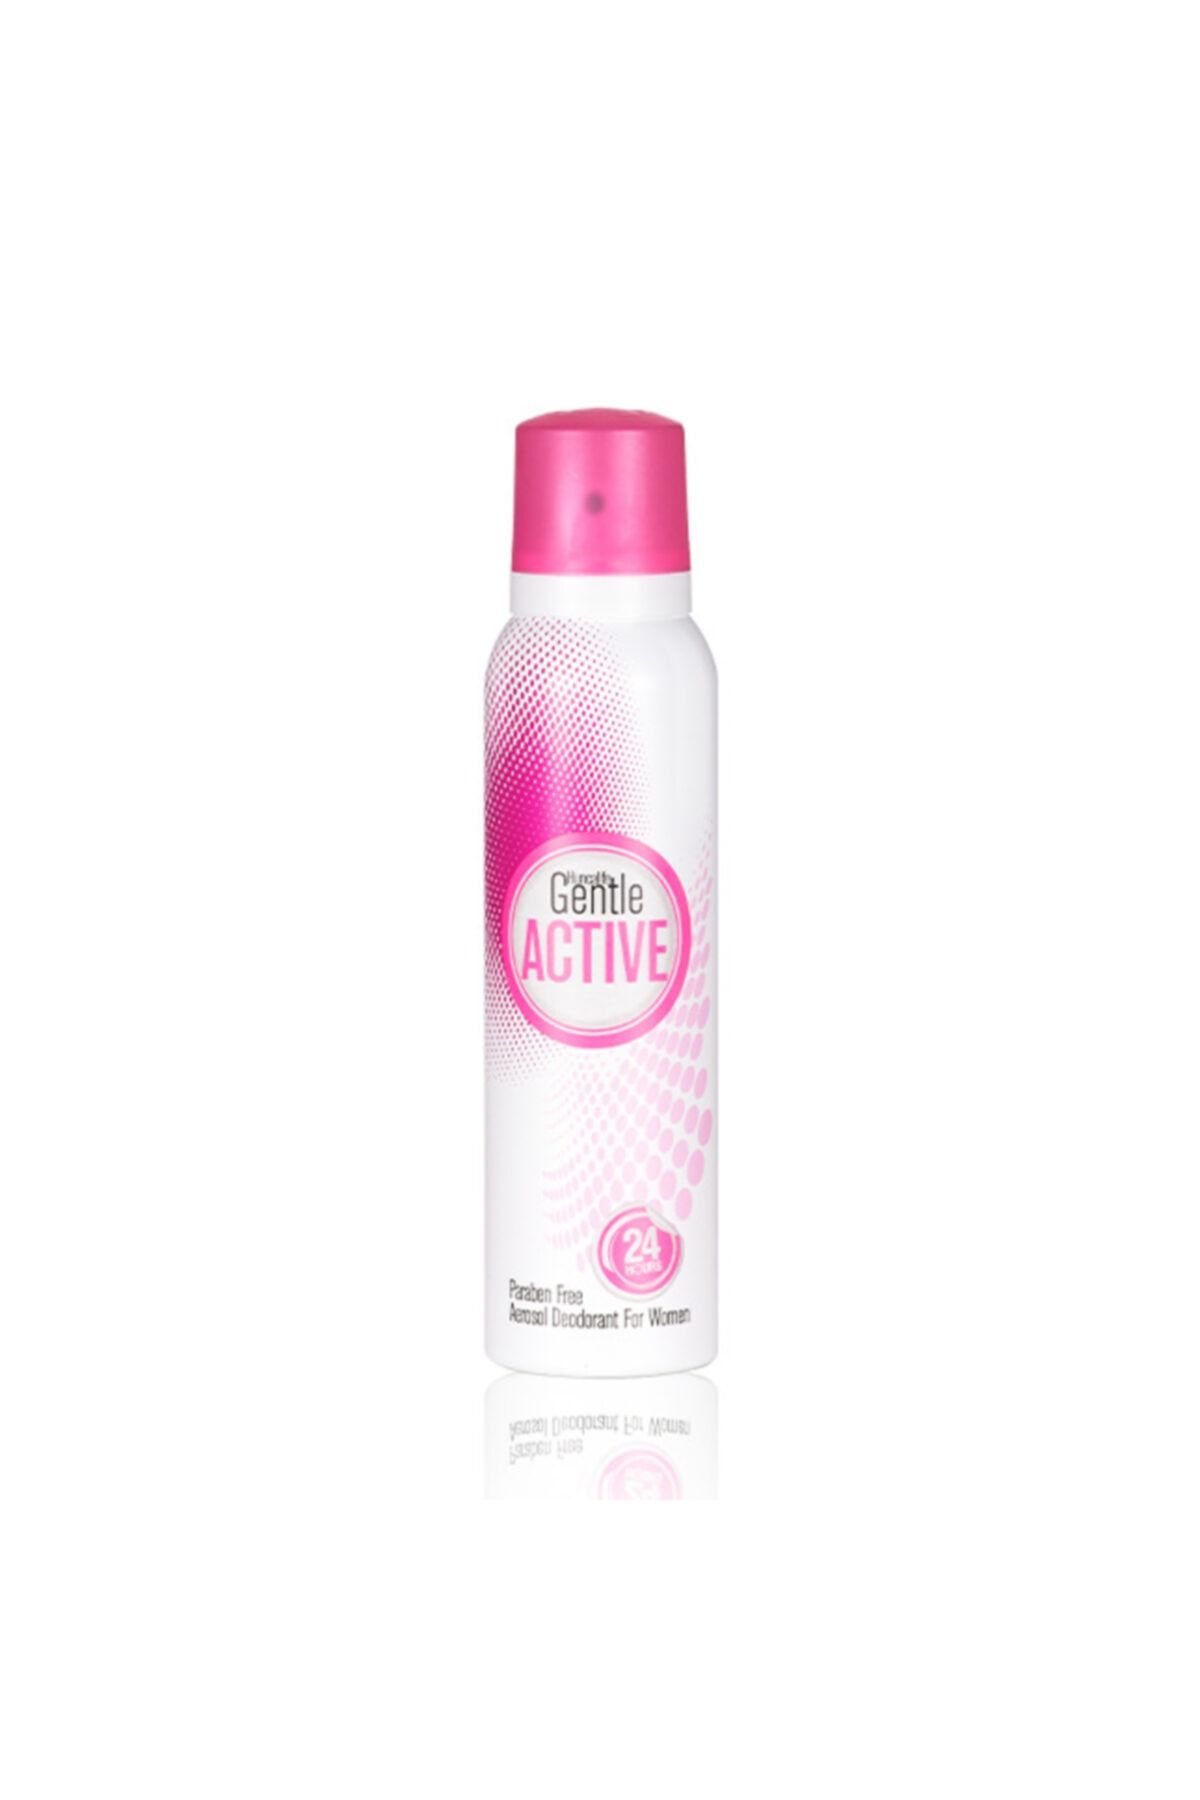 Huncalife Gentle Active Kadın Deodorant 150 ml